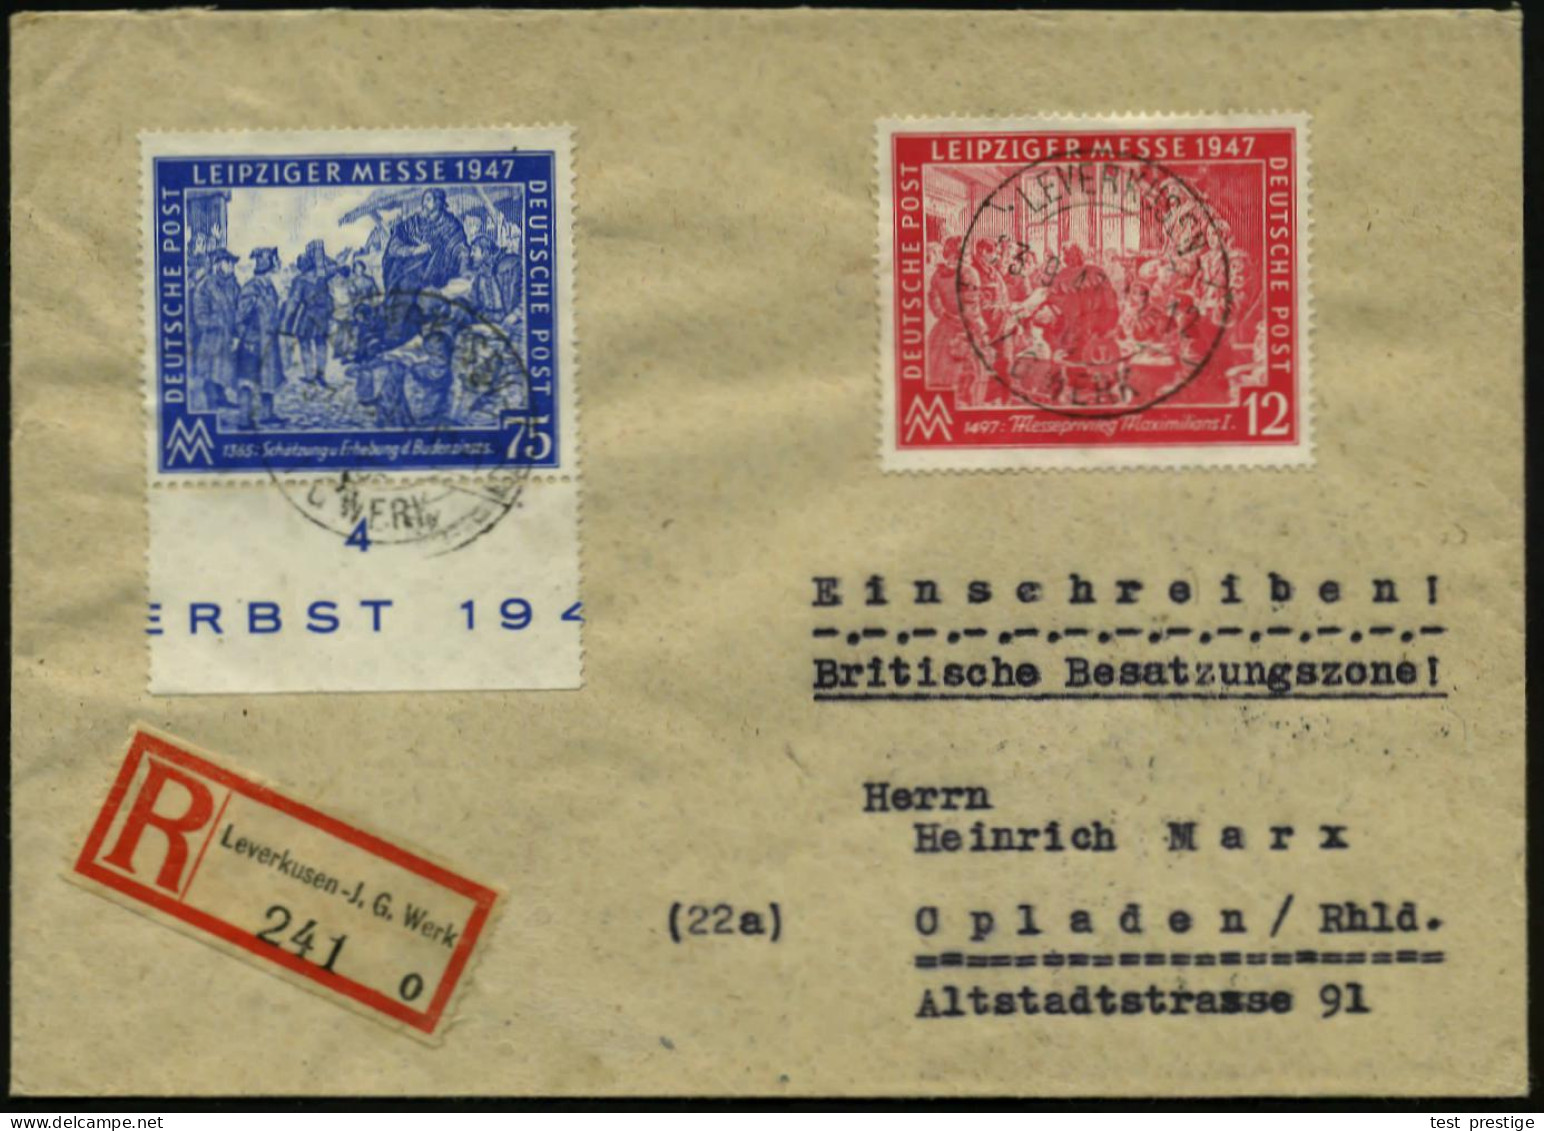 LEVERKUSEN-/ C/ I.G. WERK 1947 (23.9.) 1K-Brücke Mit UB "c", = Hauspostamt Bayer-Werk Unverändert 2x Auf Leipz. Messe-Sa - Chemistry